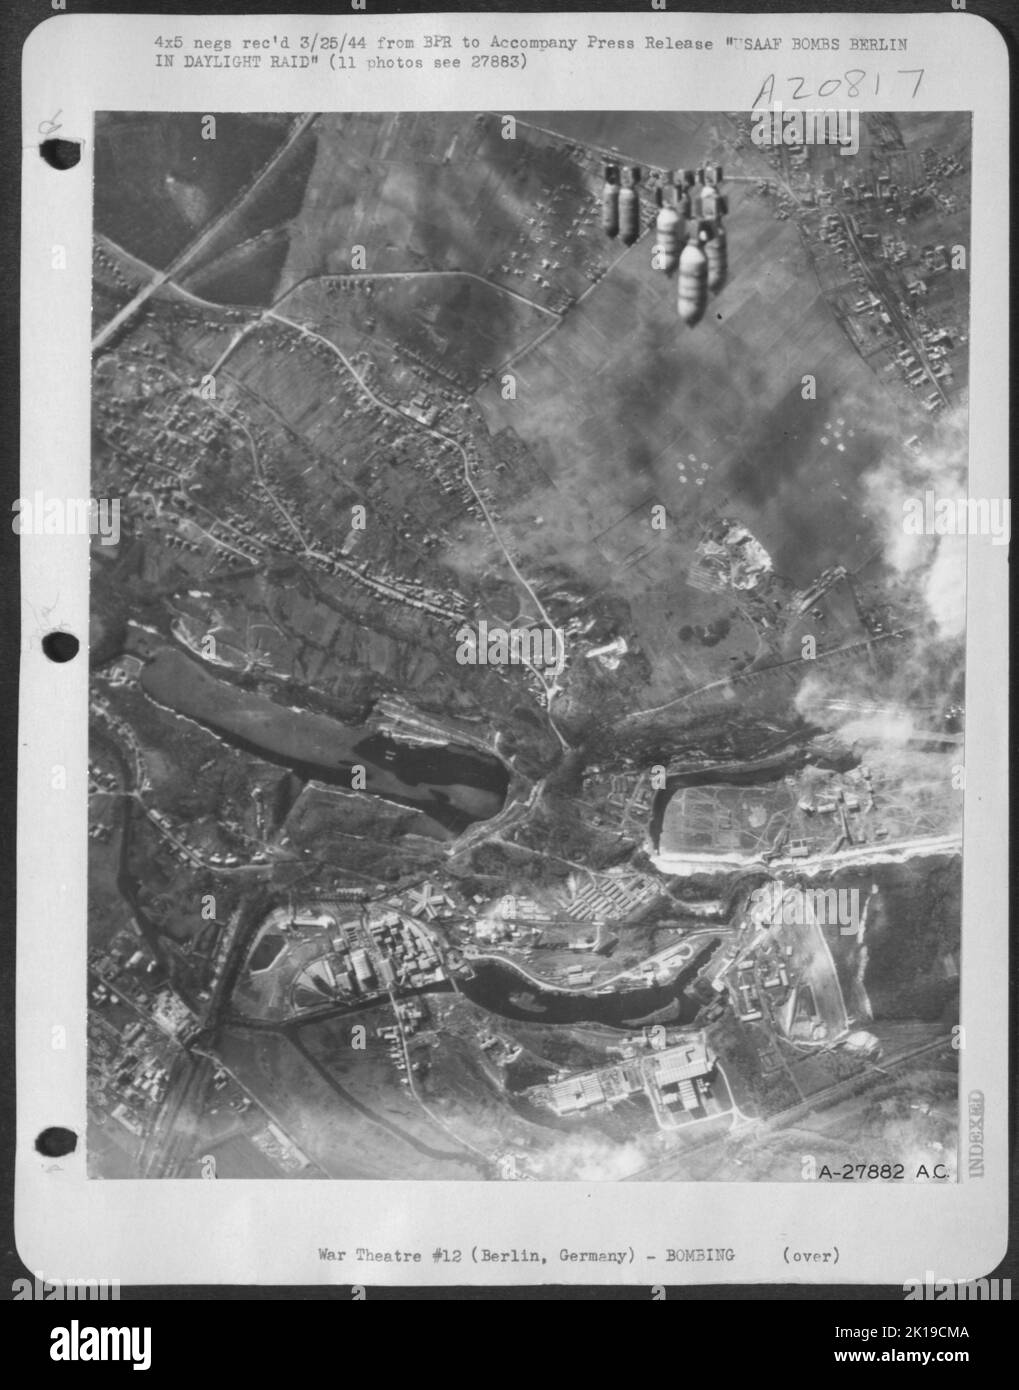 Les bombes des raids américains commencent leur descente vers une cible industrielle à Berlin lors d'une répétition de la Force aérienne de 8th. Banque D'Images